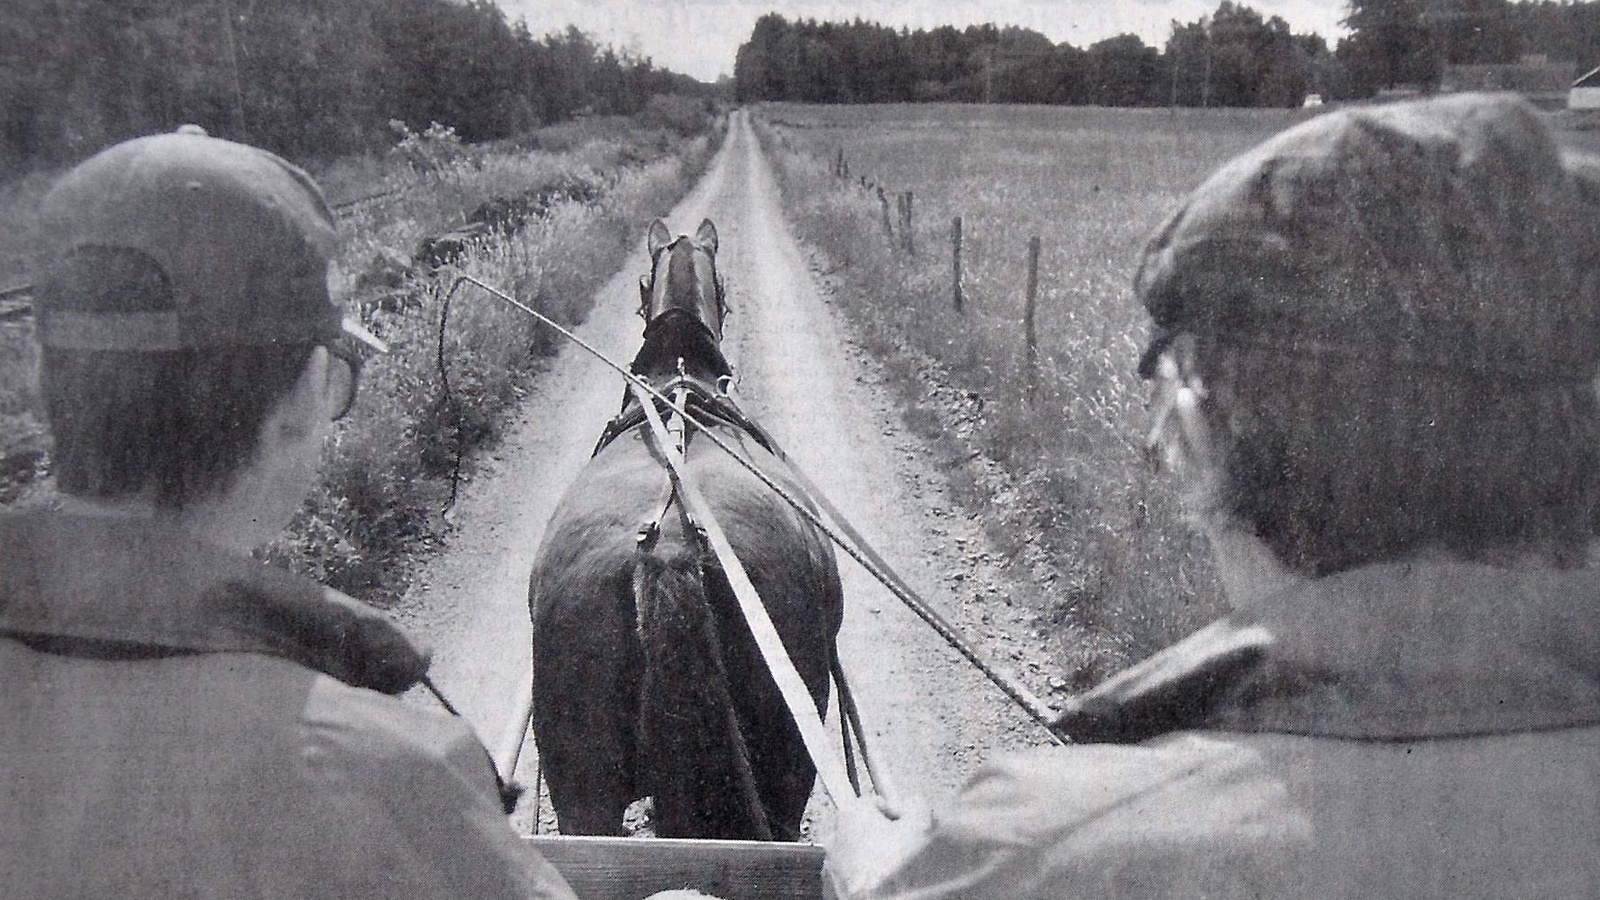 En behaglig åktur med häst och vagn.
Arkiv: Åke Ljungberg